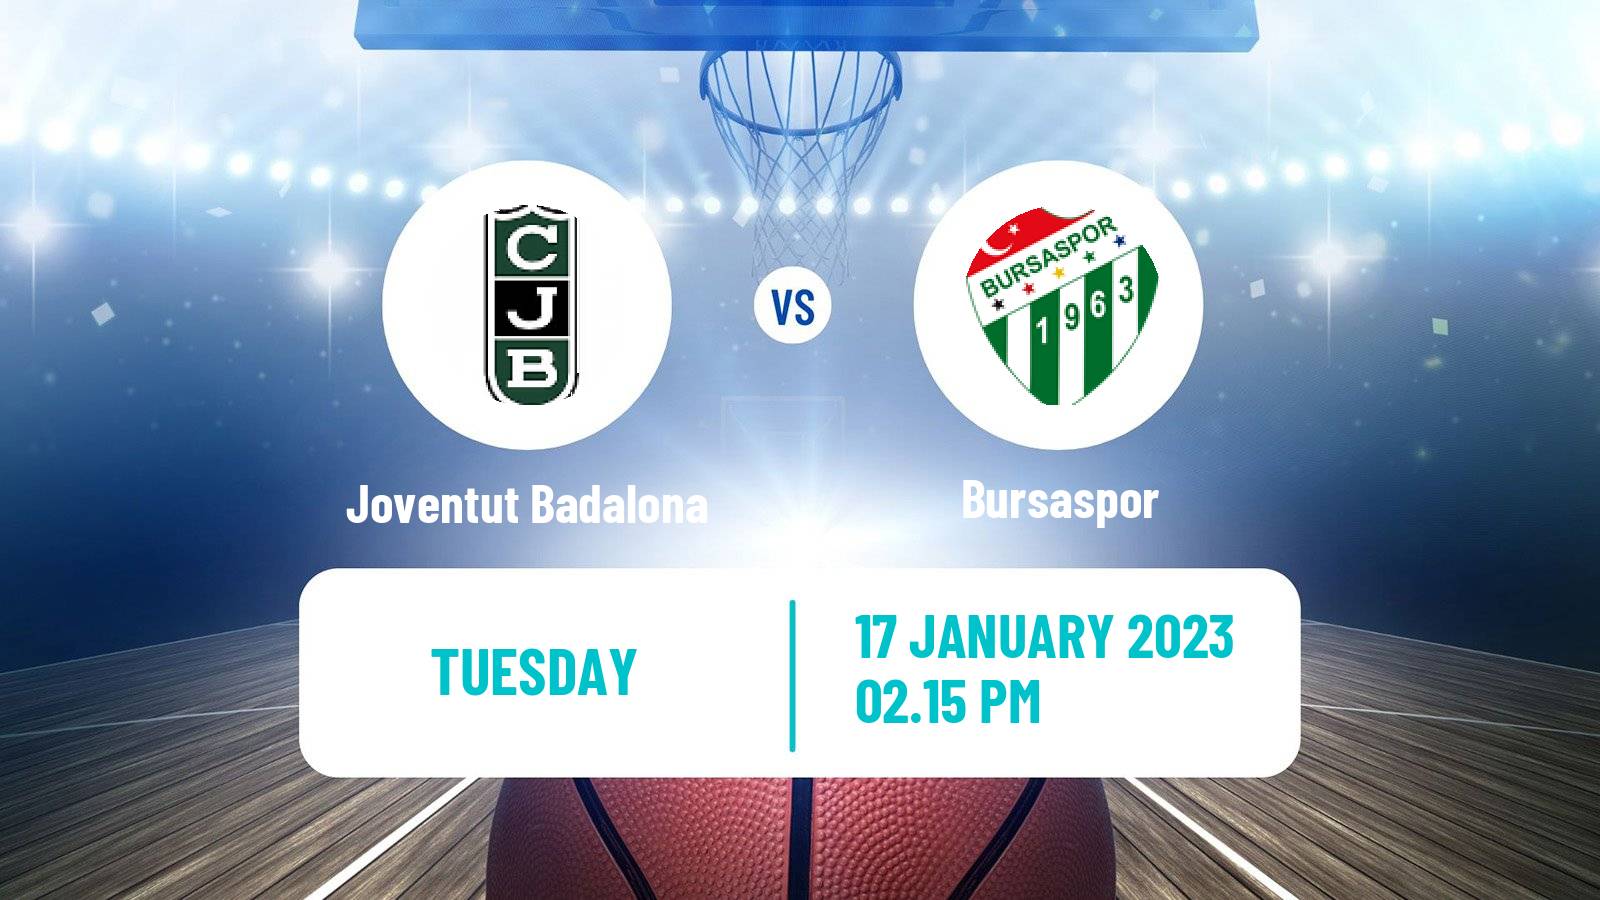 Basketball Eurocup Joventut Badalona - Bursaspor